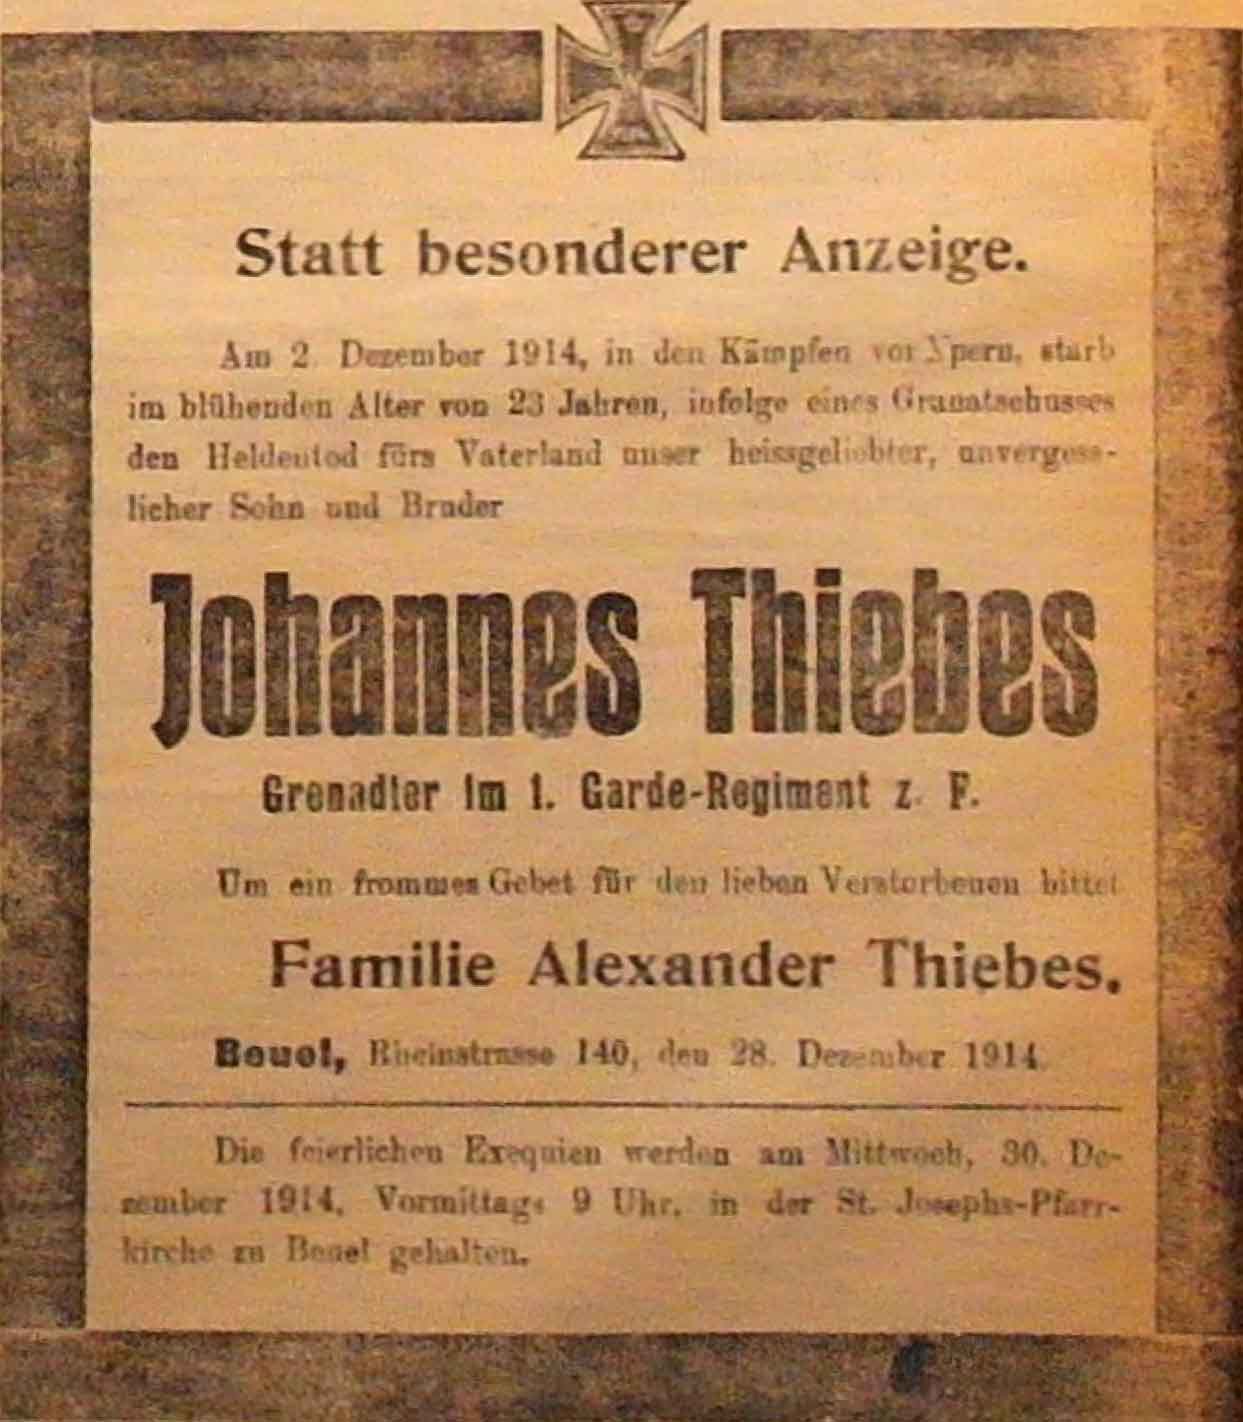 Anzeige in der Deutschen Reichs-Zeitung vom 28. Dezember 1914